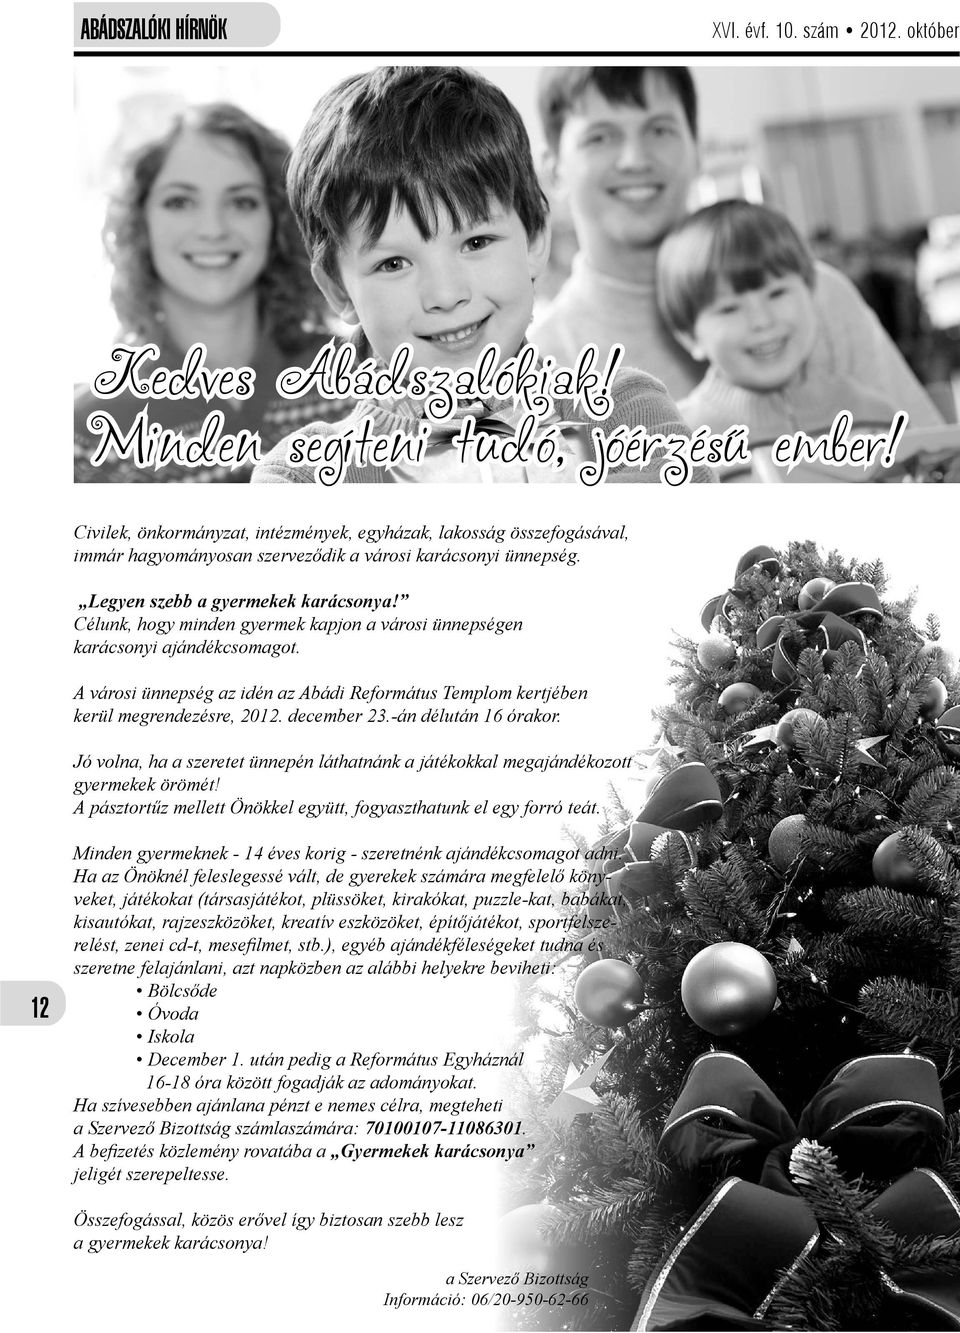 Célunk, hogy minden gyermek kapjon a városi ünnepségen karácsonyi ajándékcsomagot. A városi ünnepség az idén az Abádi Református Templom kertjében kerül megrendezésre, 2012. december 23.